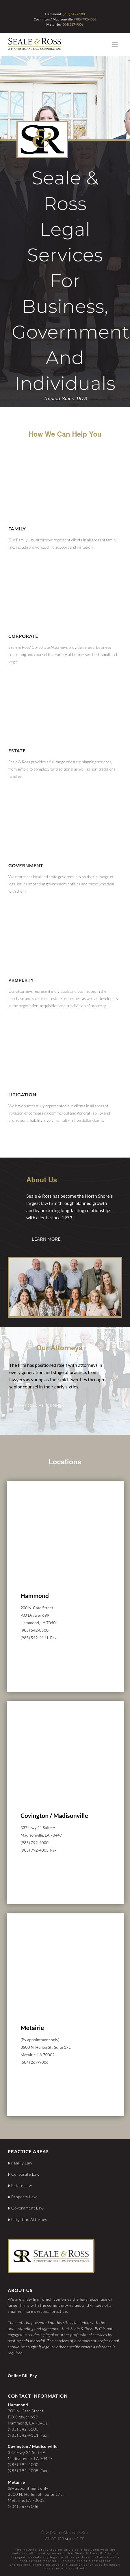 Seale & Ross - Madisonville LA Lawyers